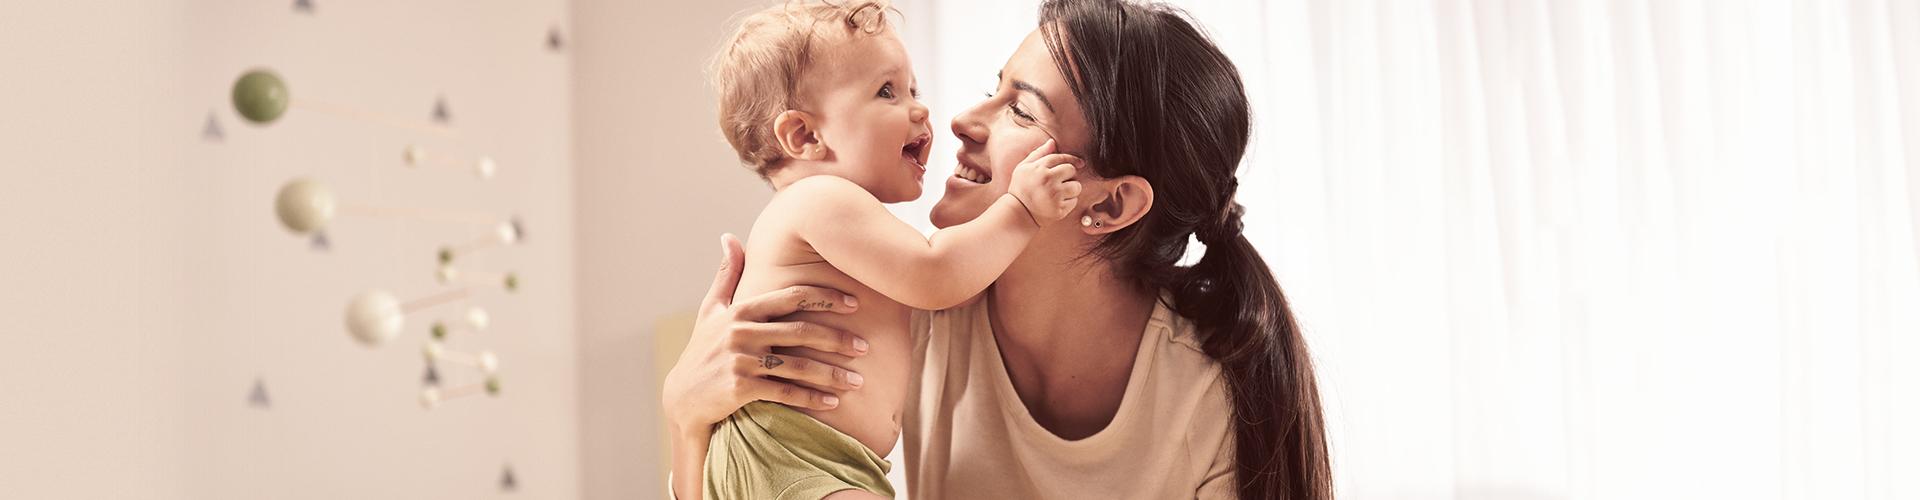 Cumple mes del bebé: consejos de regalos que son puro amor